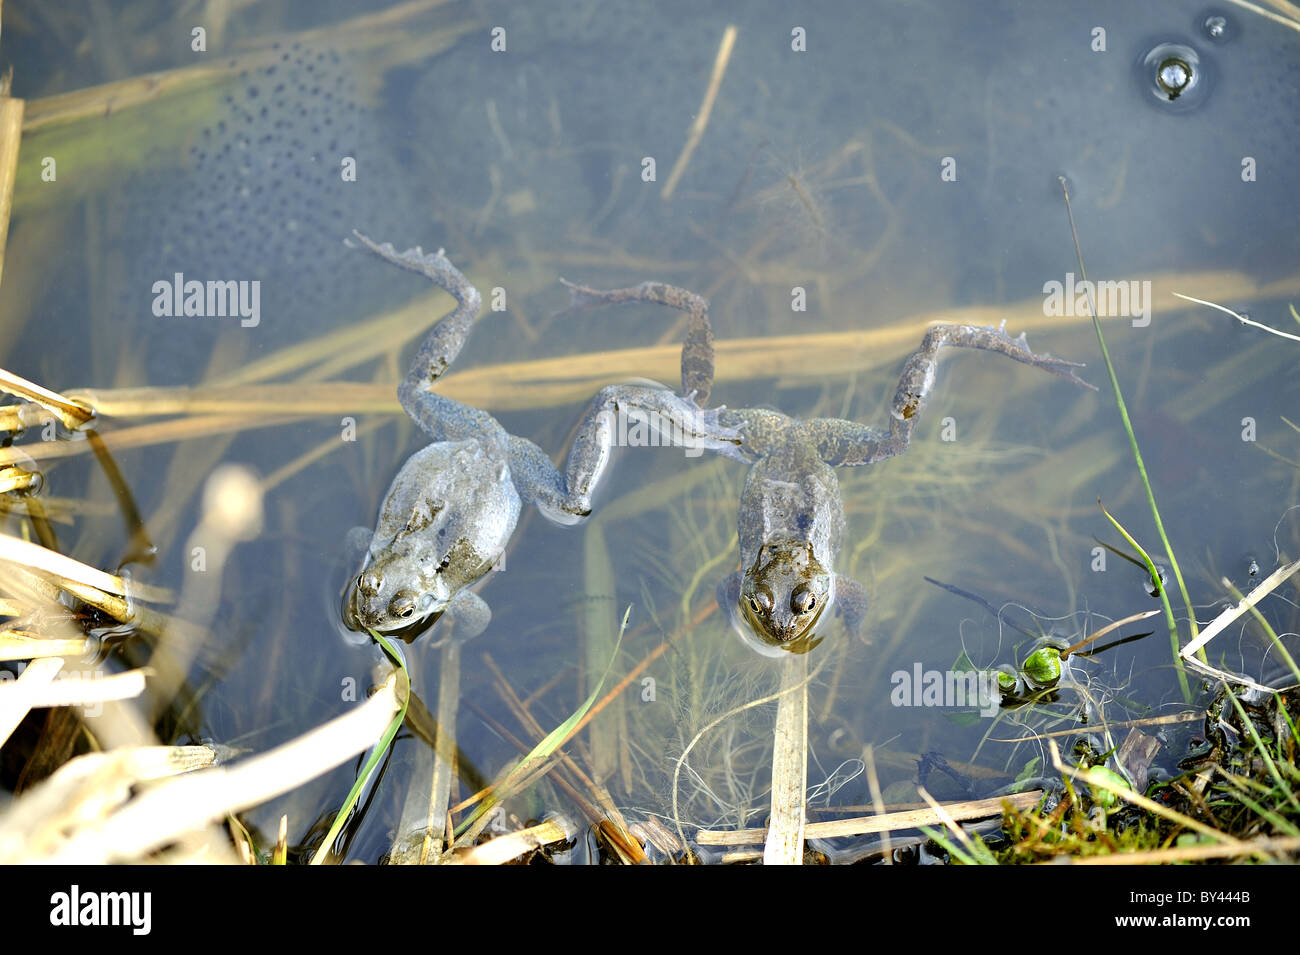 Rana comune (Rana temporaria) maschi femmine in attesa in corrispondenza della superficie dell'acqua Foto Stock